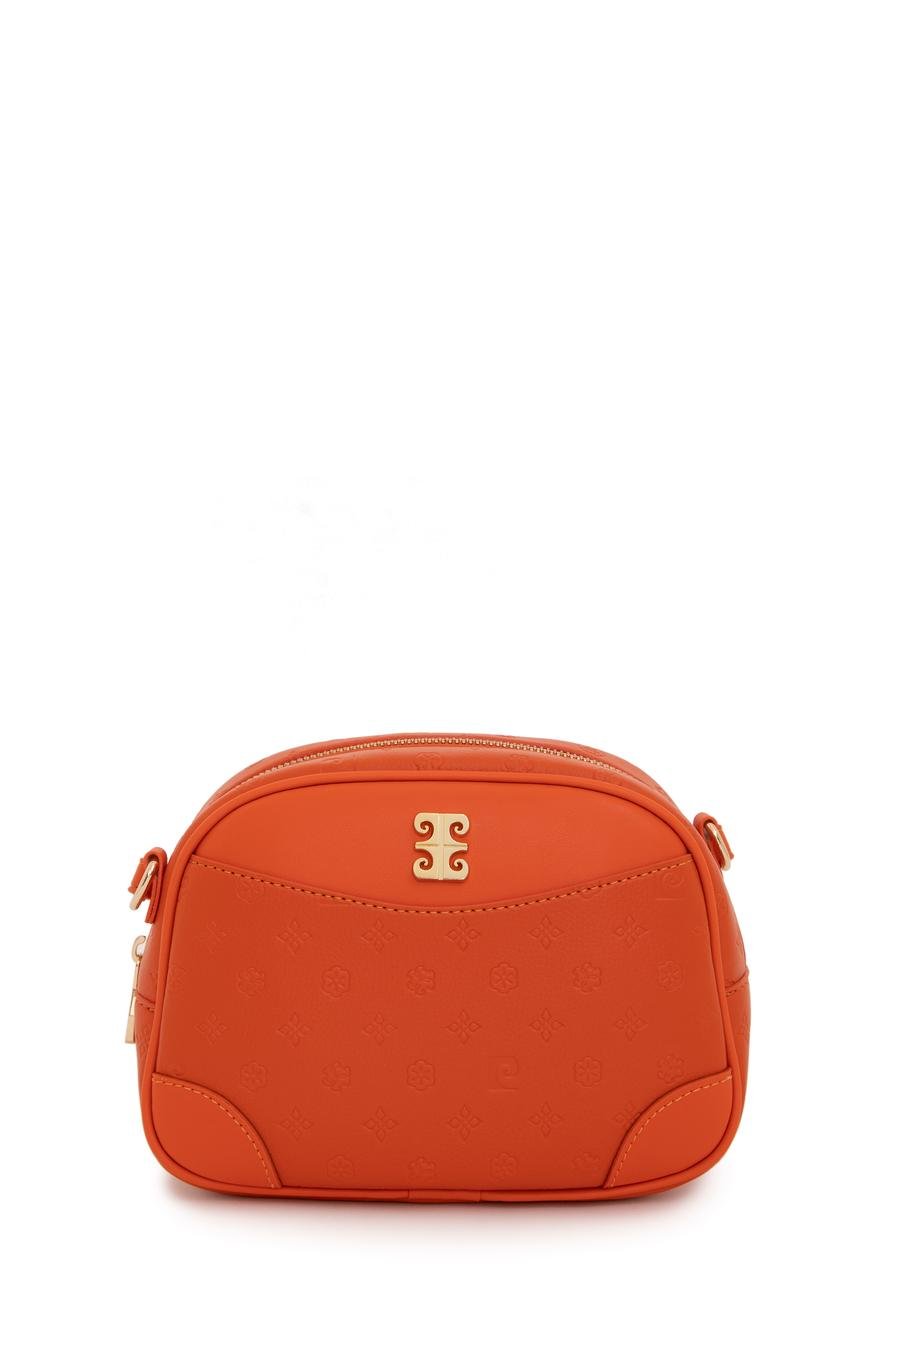 کیف  نارنجی  استاندارد  زنانه  پیرکاردین